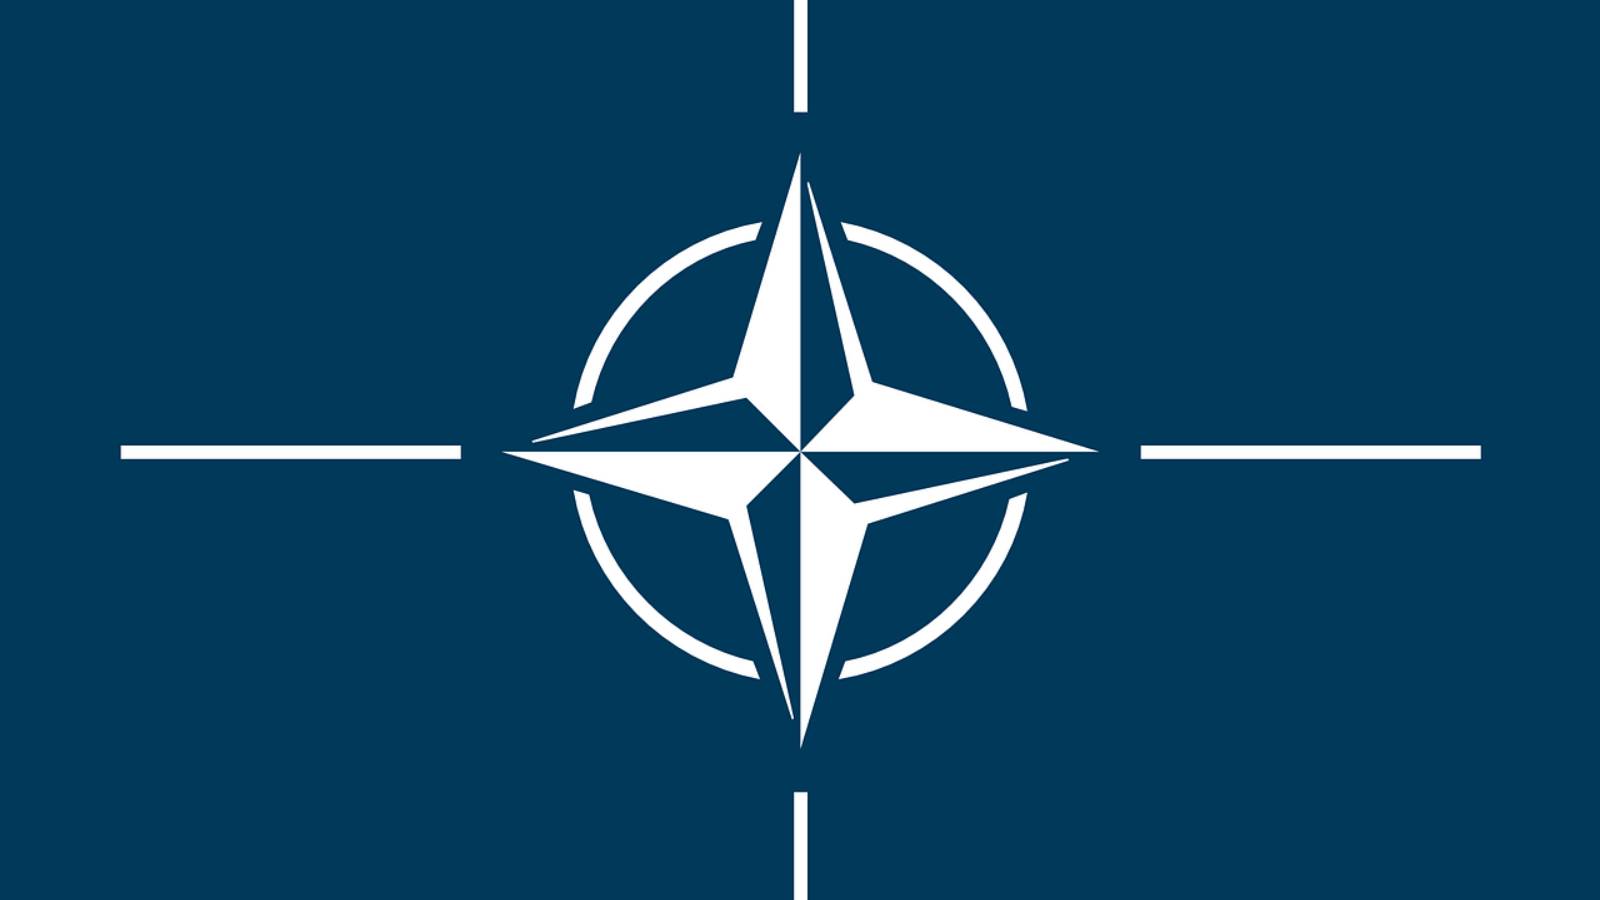 Venäjä uhkaa tuoda ydinaseita Itämerelle, jos Ruotsi ja Suomi liittyvät Natoon